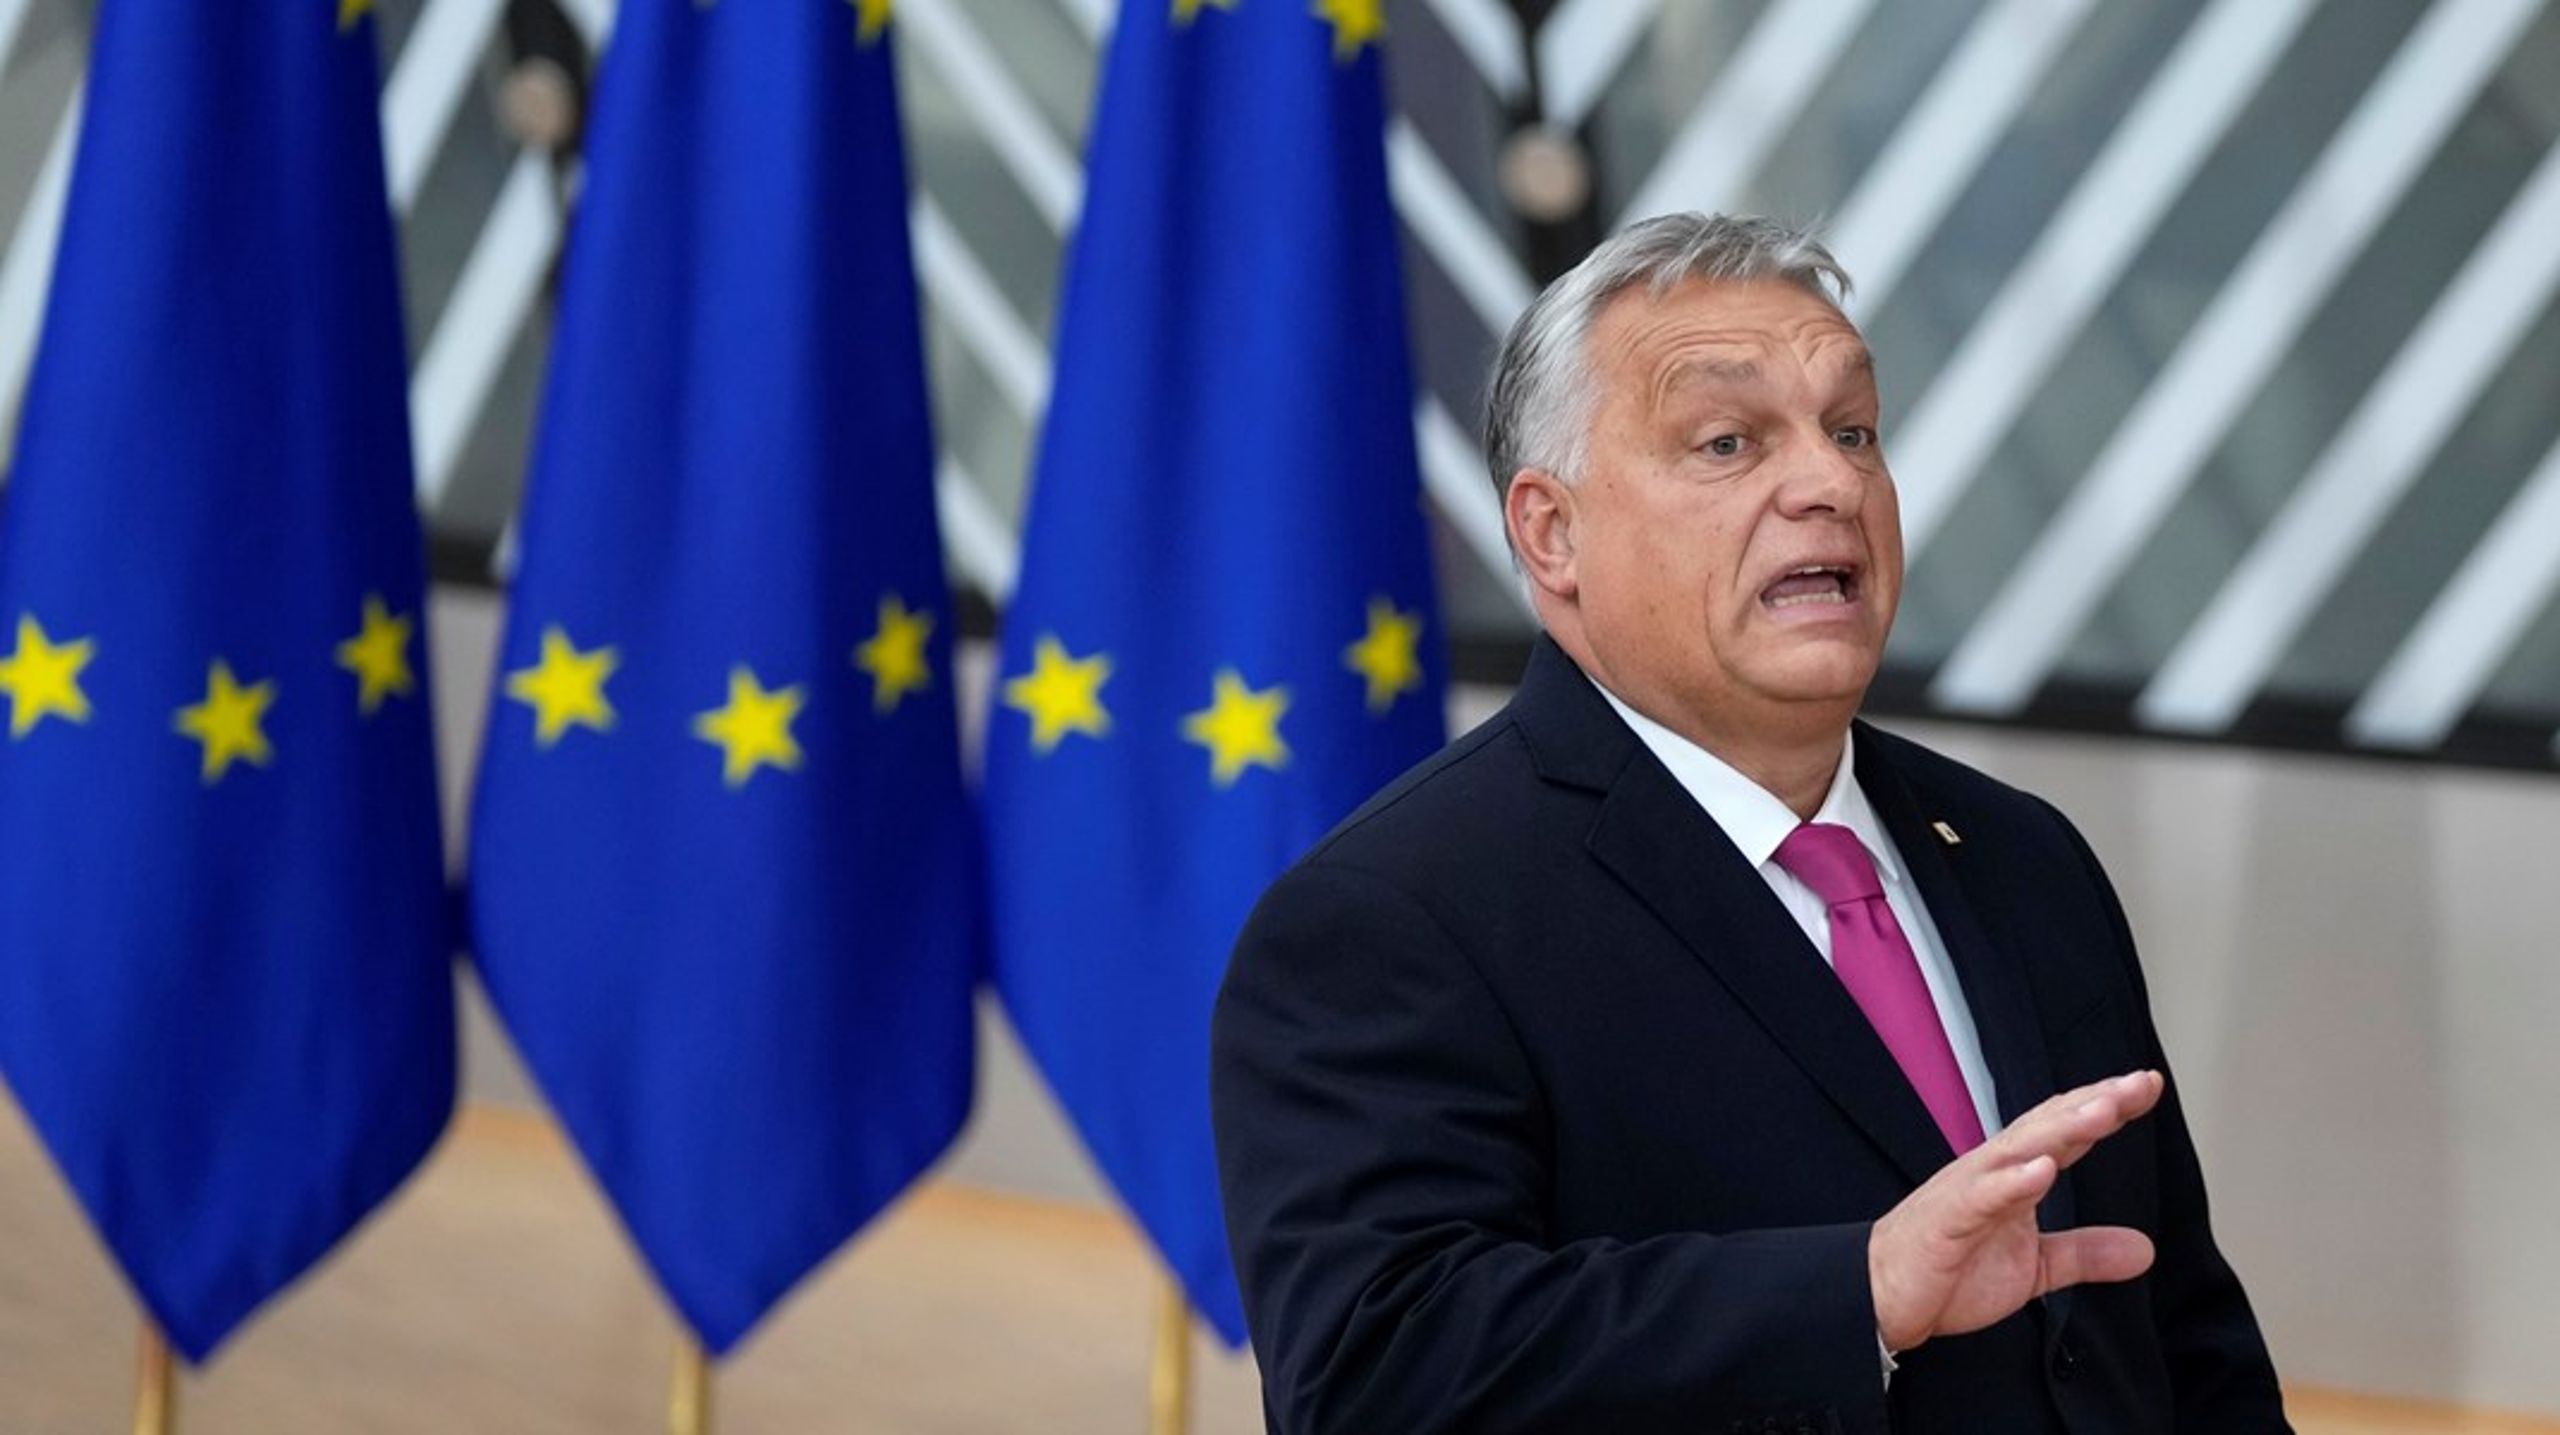 Veckans toppmöte kommer att visa om Ungerns premiärminister Viktor Orbán har för avsikt att göra verklighet av sina hot om att stå i vägen för Ukrainas framtid i unionen.